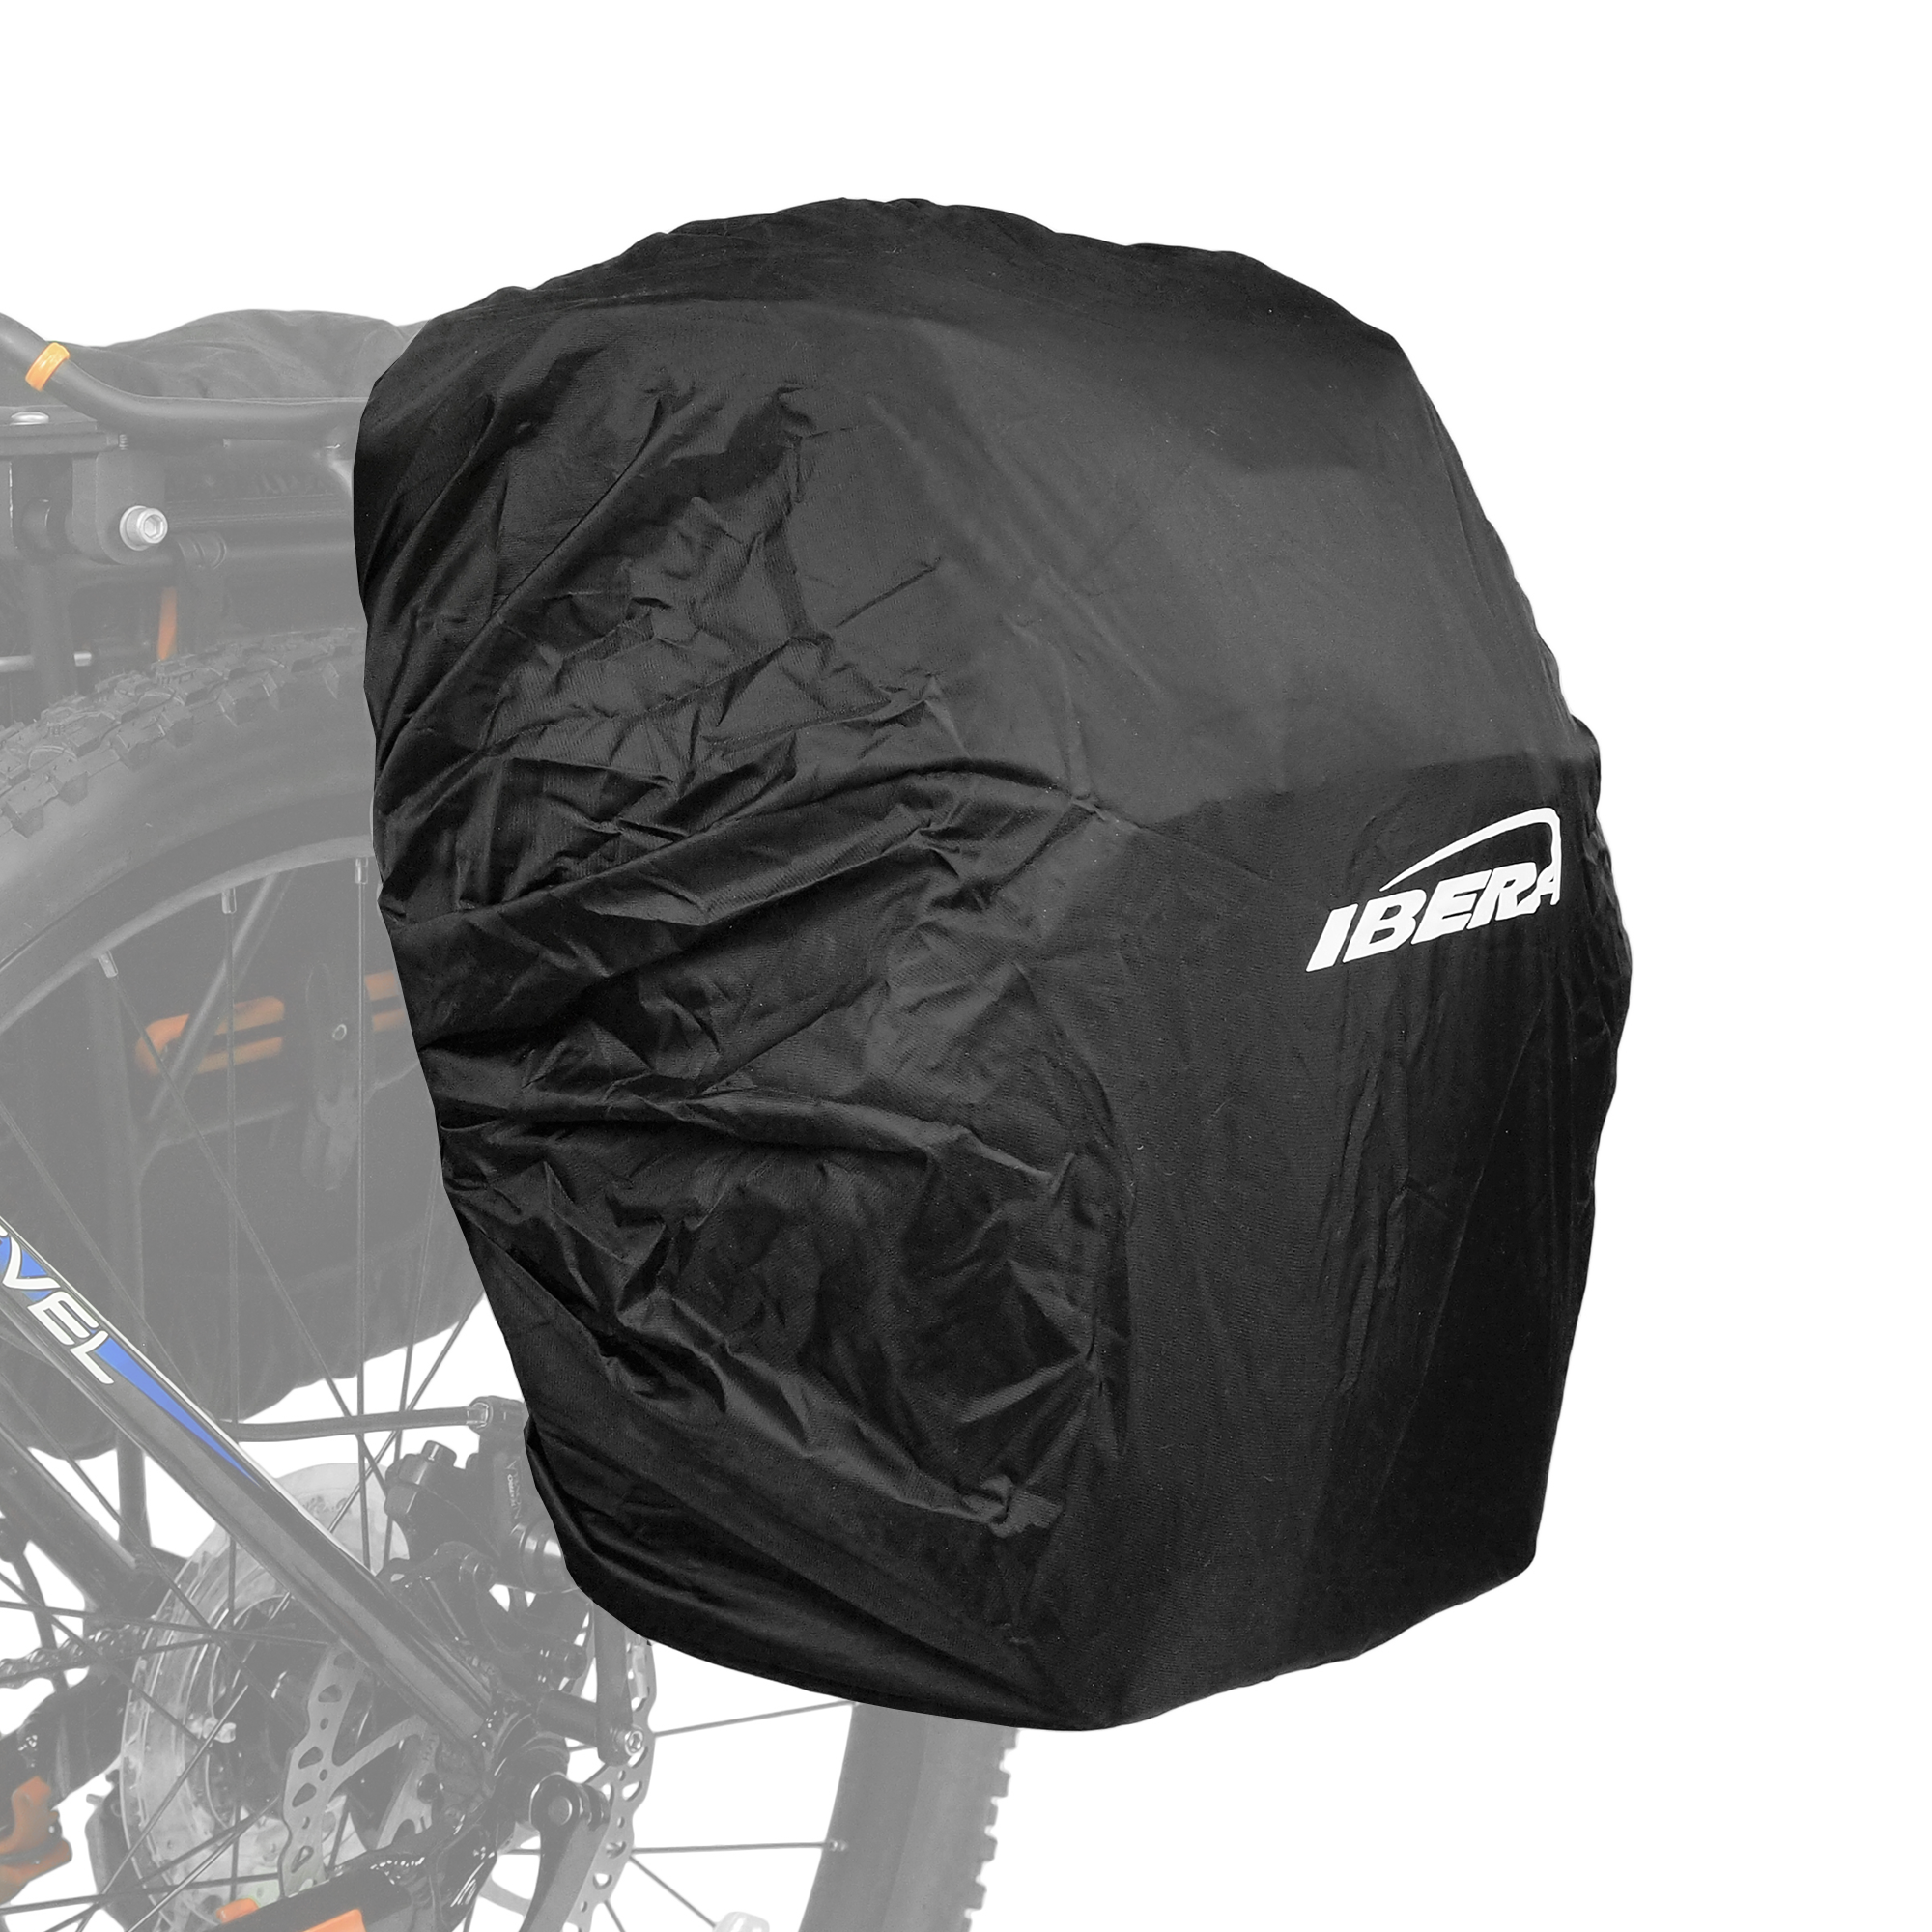 IBERA Bike PakRak Rain Cover - BagIB-BA9 - 1 Pack, IB-RC3